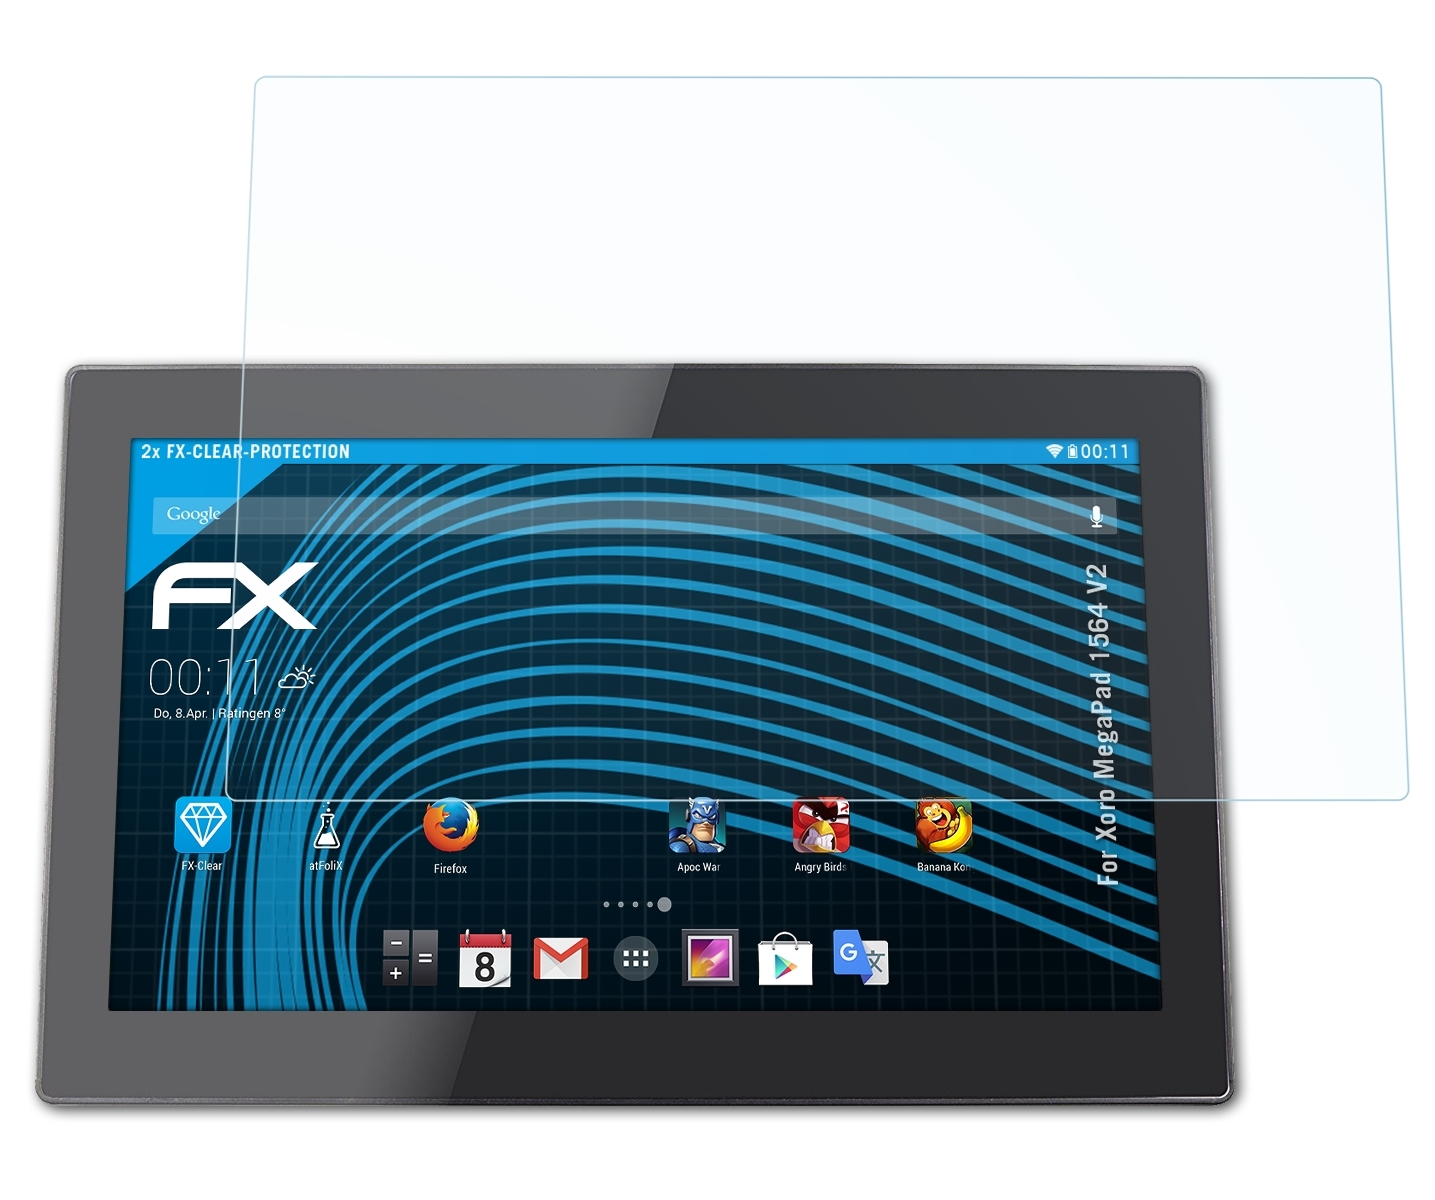 MegaPad Displayschutz(für ATFOLIX Xoro FX-Clear V2) 1564 2x